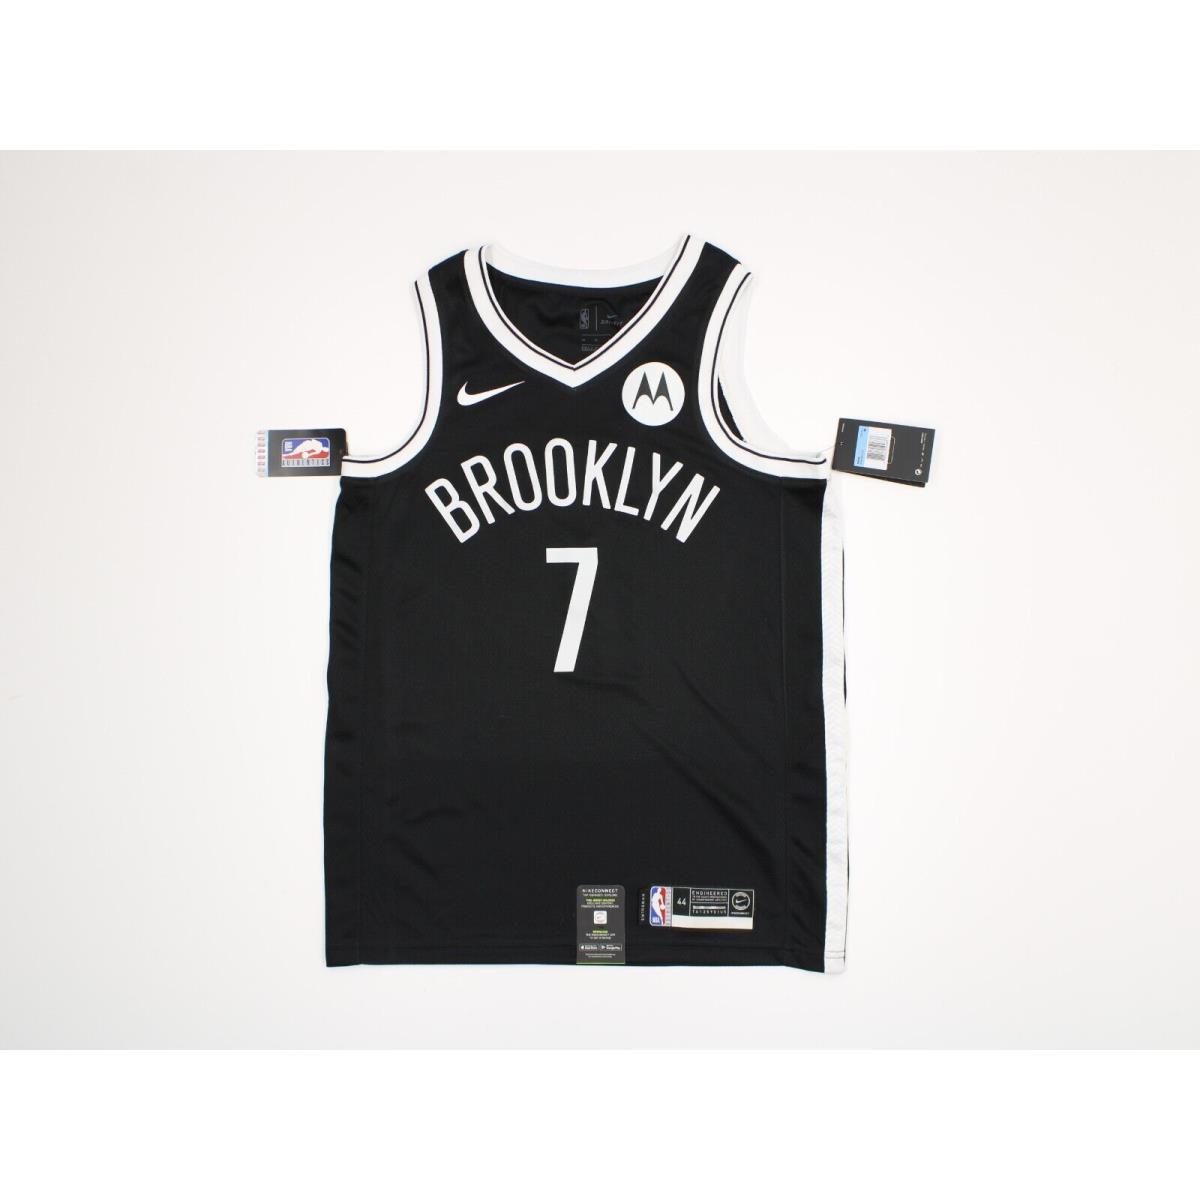 Nike Dri Fit Kevin Durant Brooklyn Nets Jersey Shirt Size 44